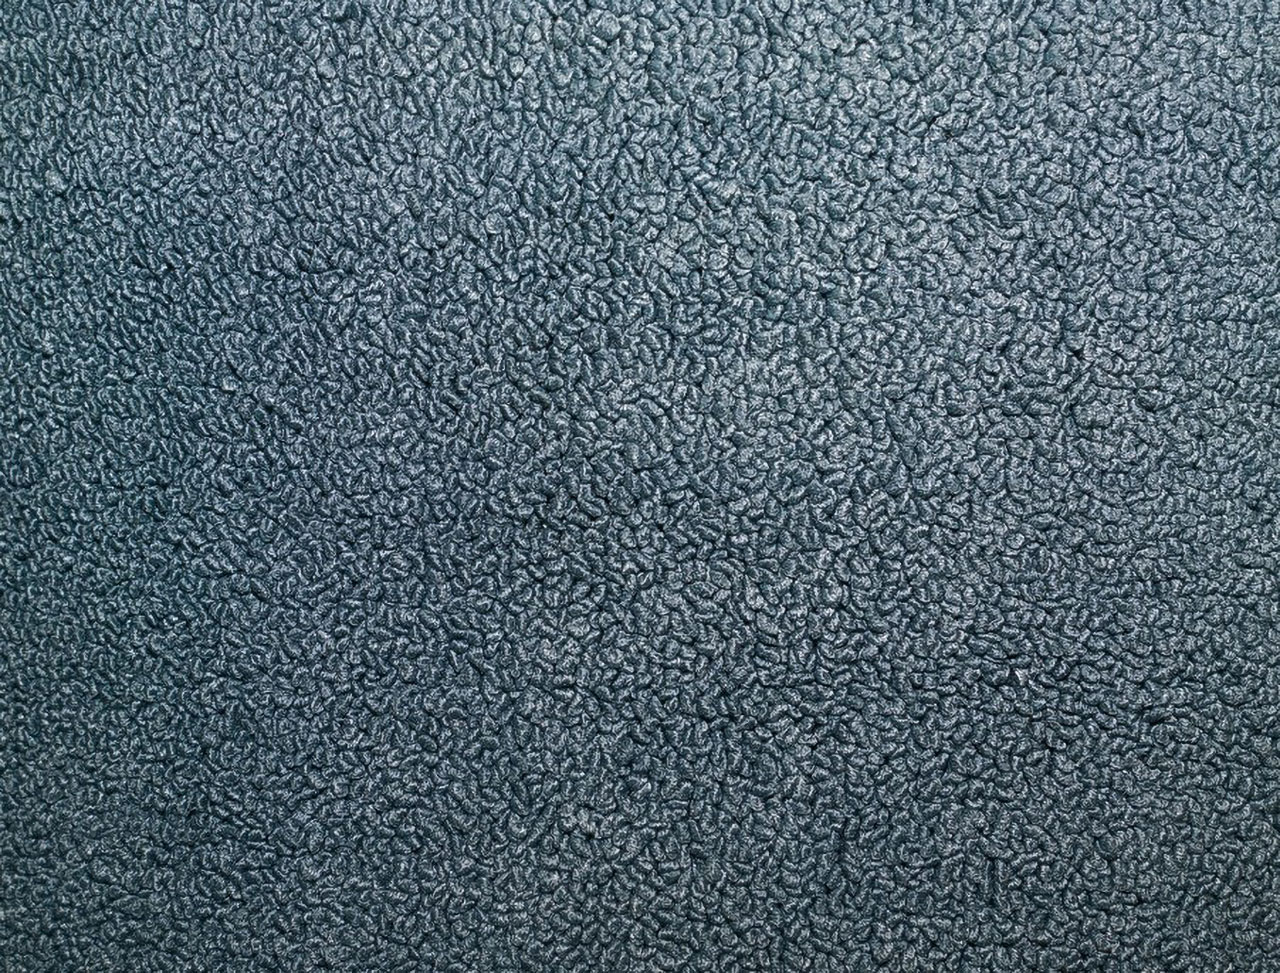 Holden Kingswood HK Kingswood Ute 14K Jacana Blue Carpet (Image 1 of 1)